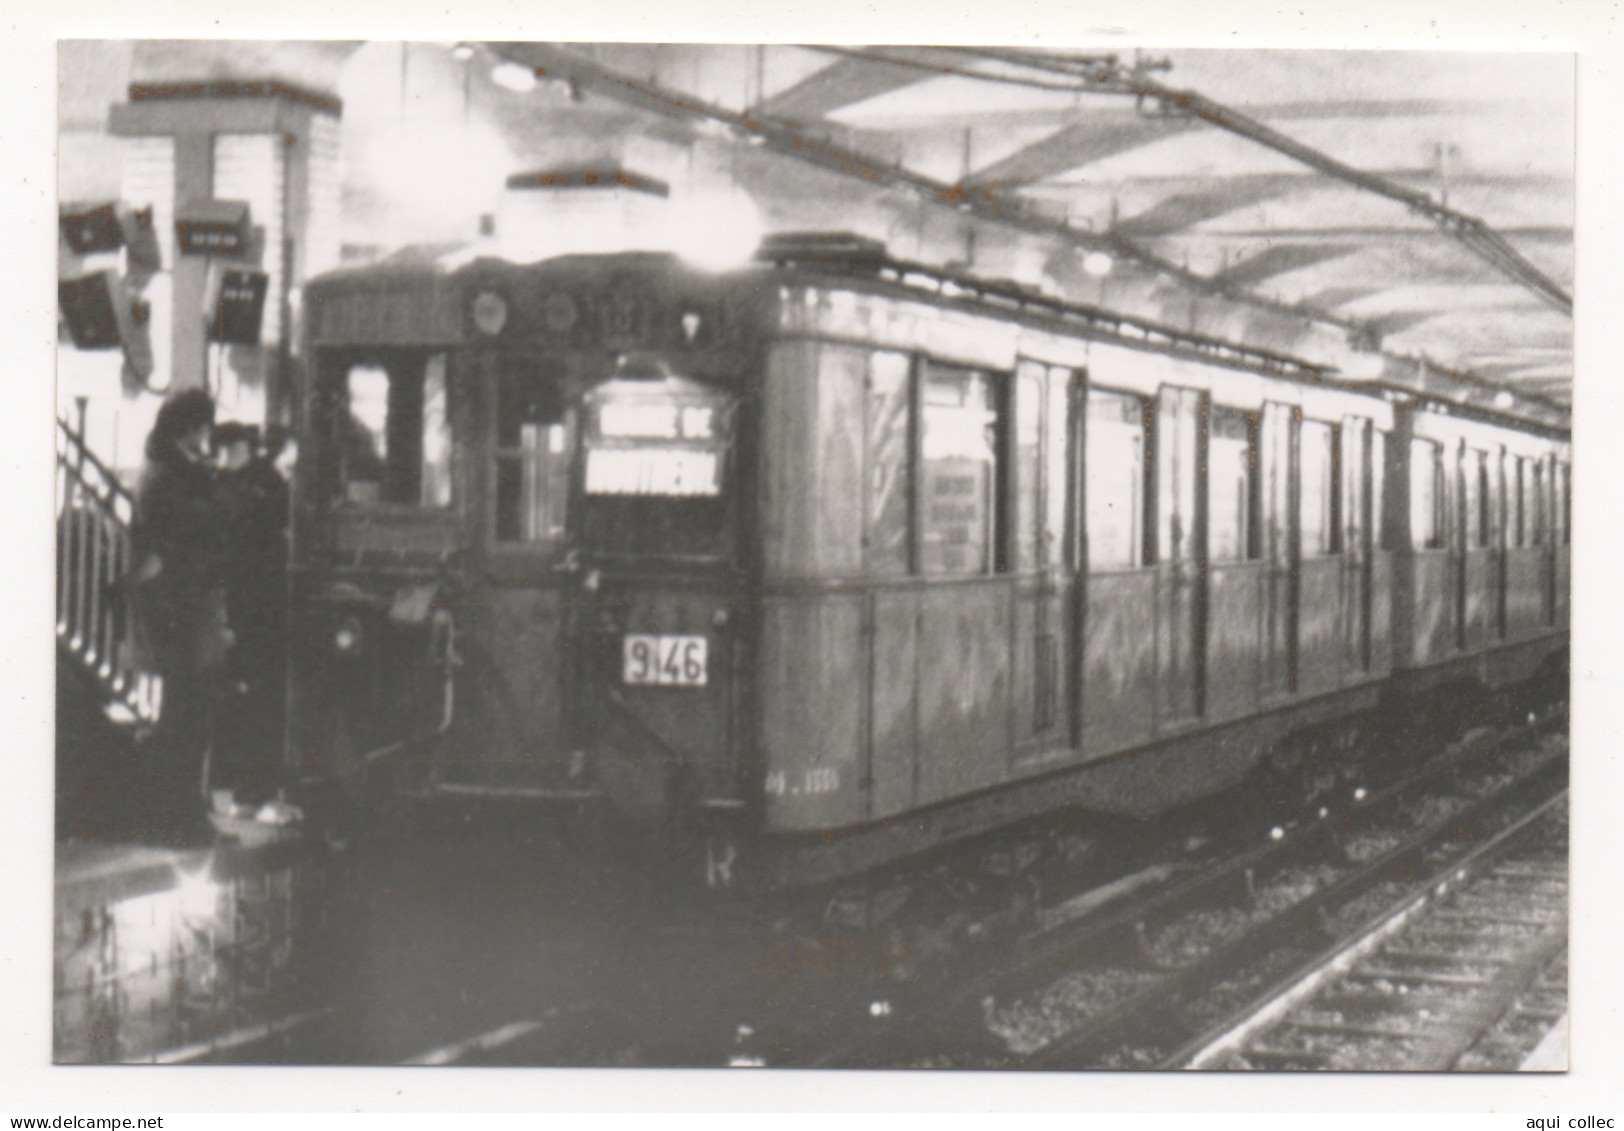 MÉTRO DE PARIS 04/1983 . UNE RAME SPRAGUE ARRIVE À LA STATION PORTE SE ST. CLOUD - Subway